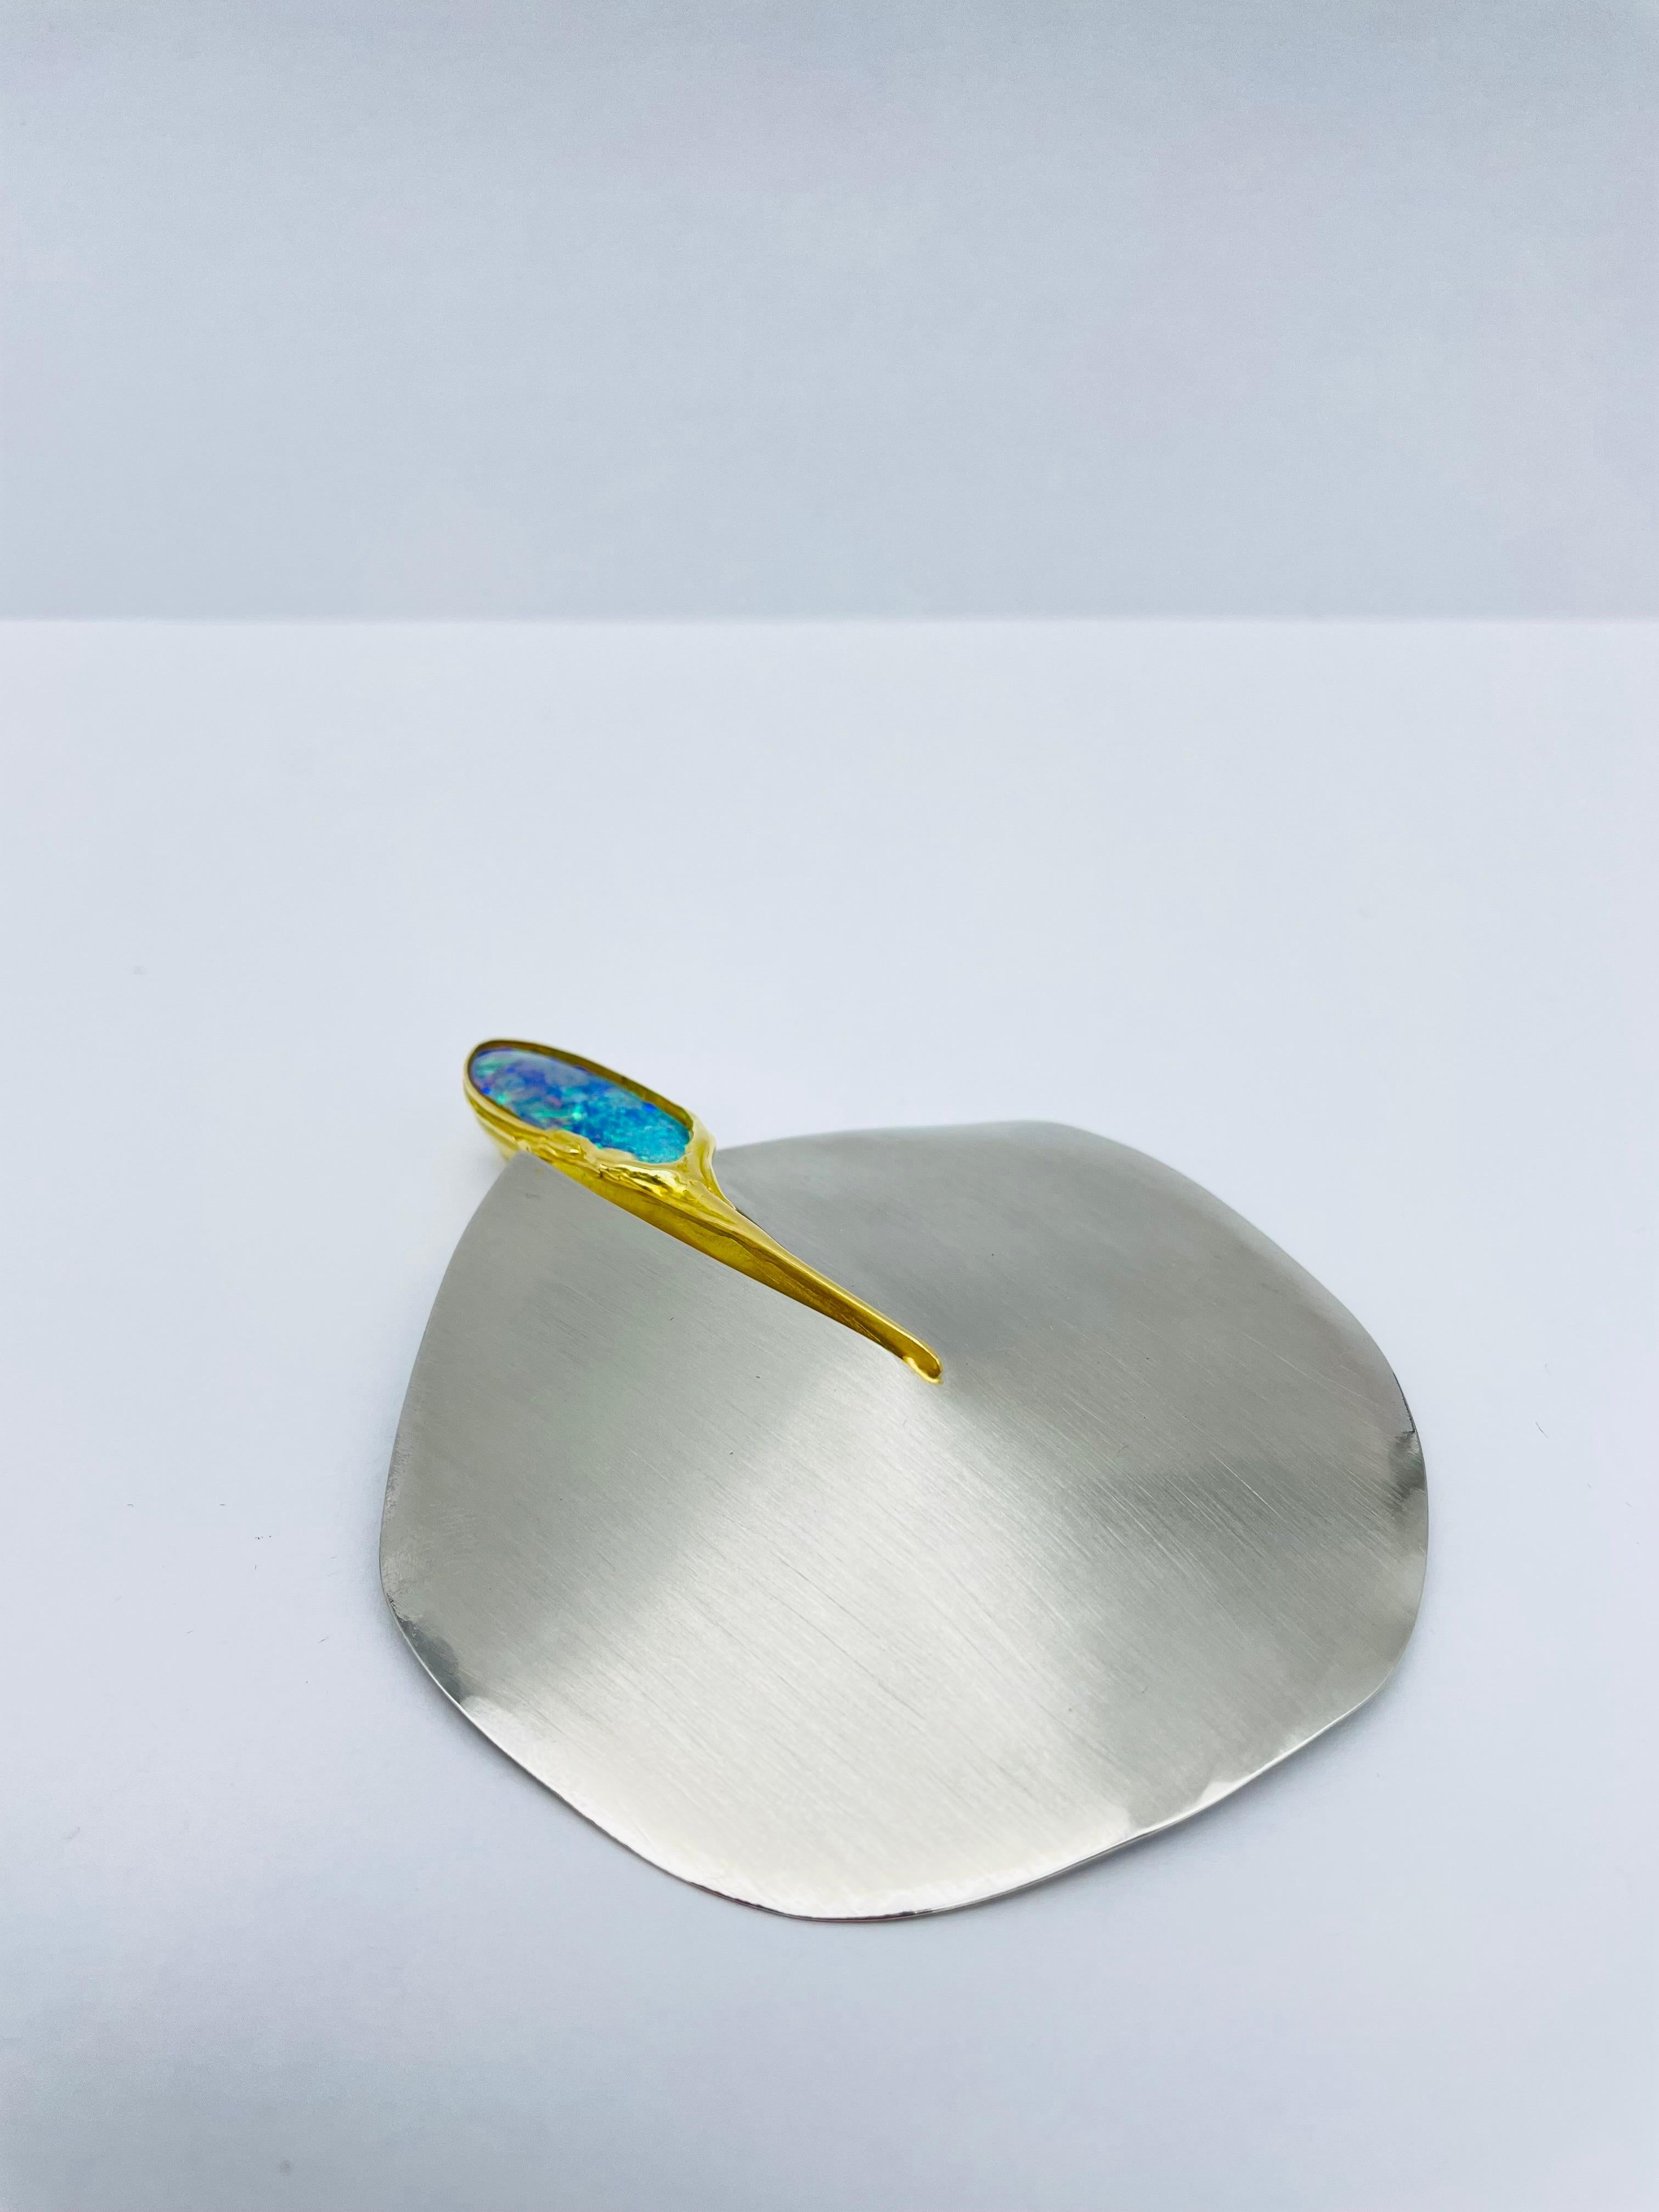 Bicolor Platinum/18k Gold Brooch-Pendant with Australian Opal, Unique For Sale 9